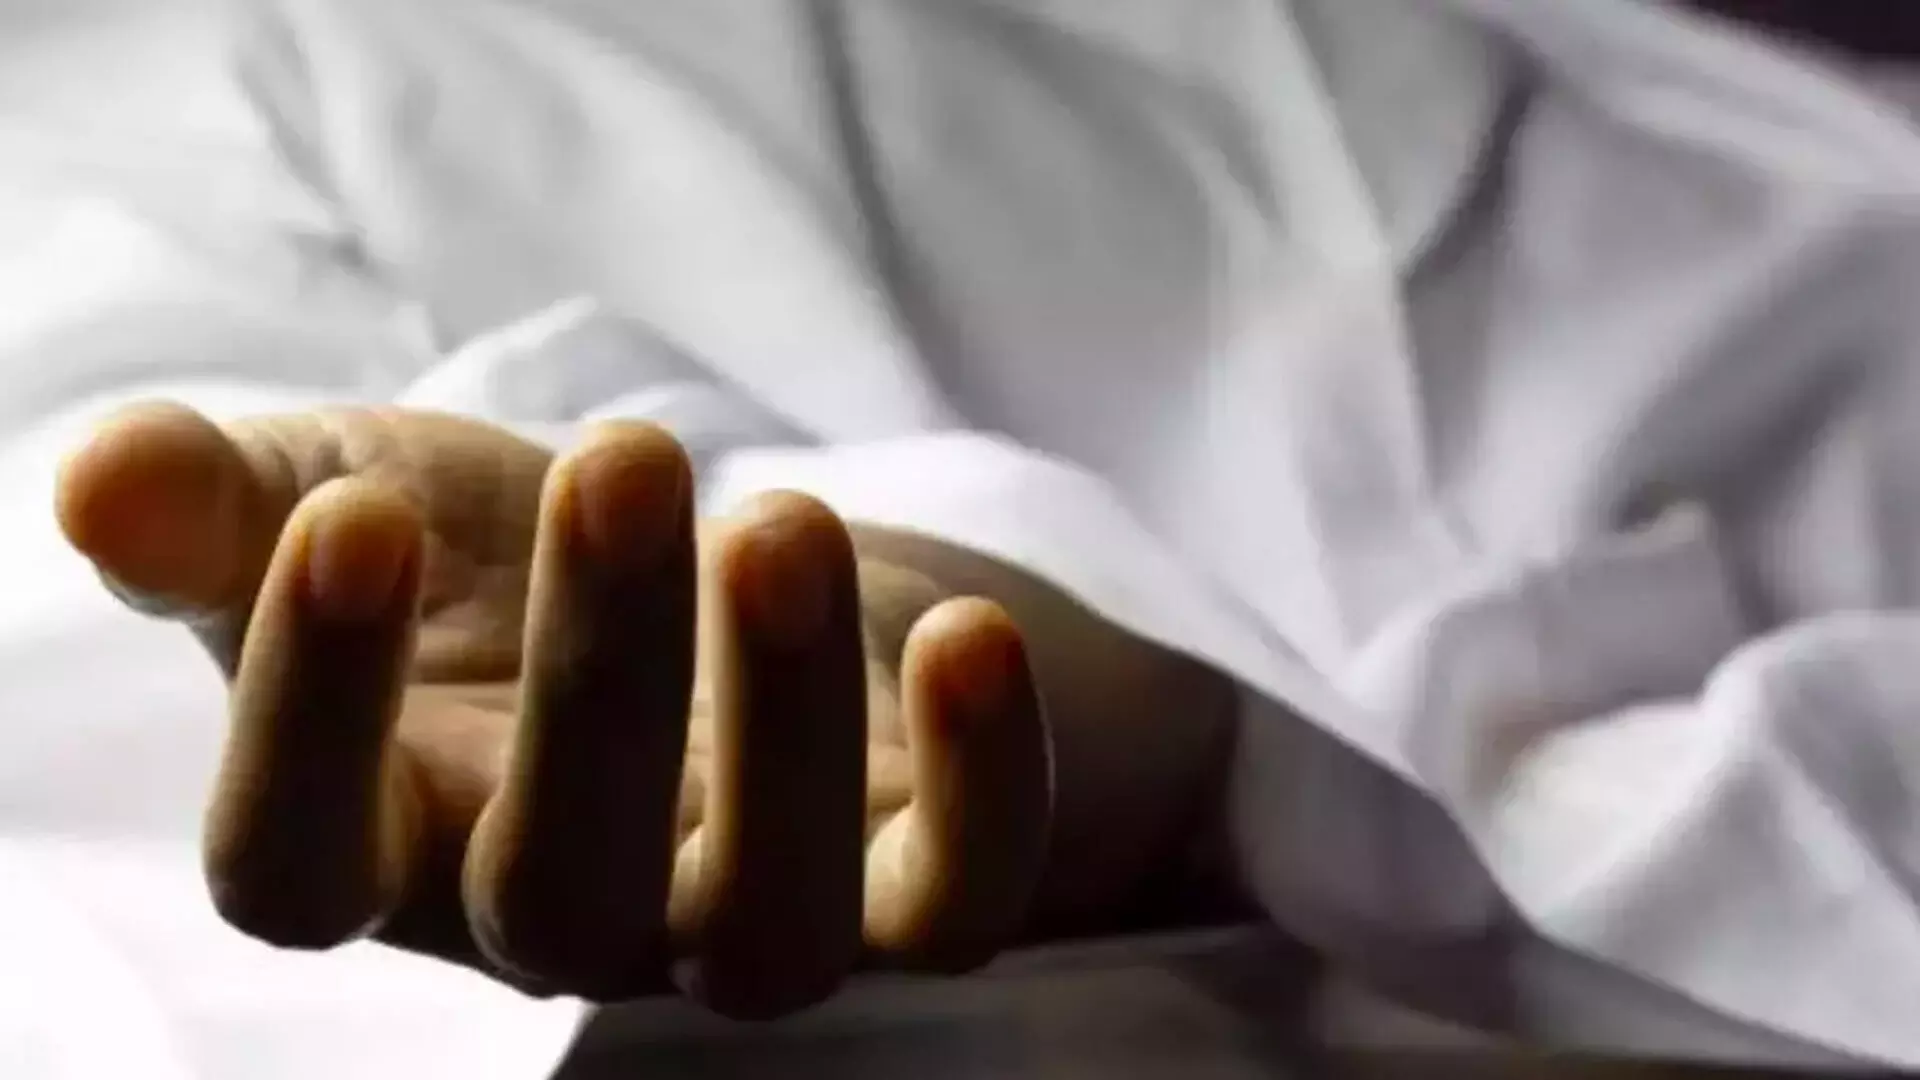 Kerala: महिला के लापता होने के 15 साल बाद, उसके मरने की हुई पुष्टि